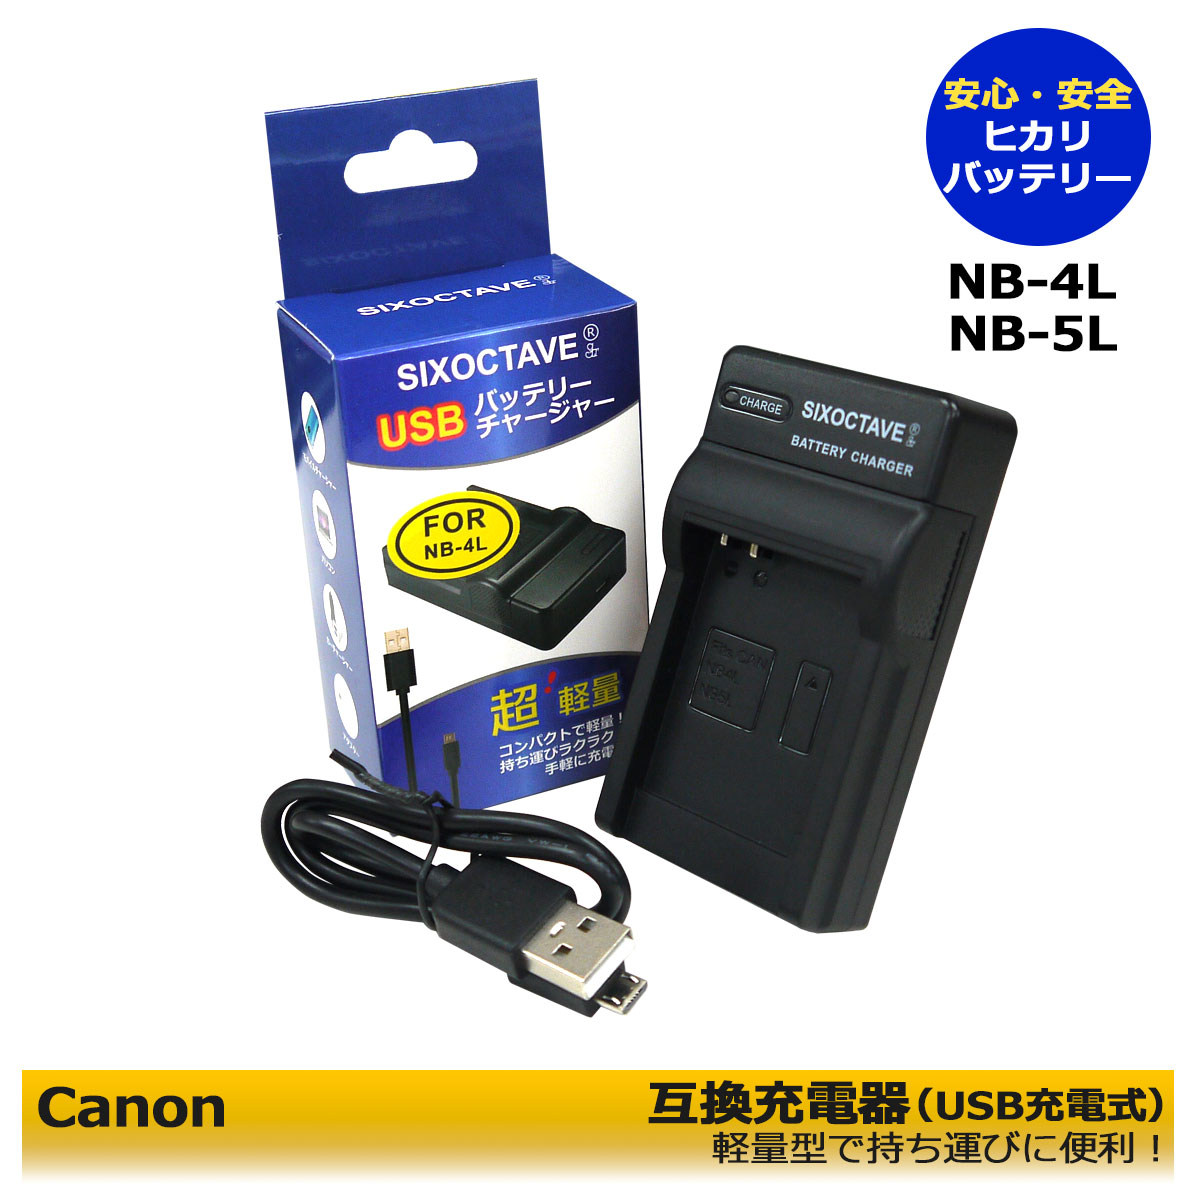 Canon NB-4L NB-5L 互換充電器 （USB）1個 ≪純正バッテリーも充電可能≫ IXY DIGITAL L4 / IXY DIGITAL L3 / IXY DIGITAL WIRELESS / DIGITAL IXUS 100 IS / DIGITAL IXUS 110 IS / PowerShot ELPH 330 HS / PowerShot SD30 / PowerShot SD40 / PowerShot SD300